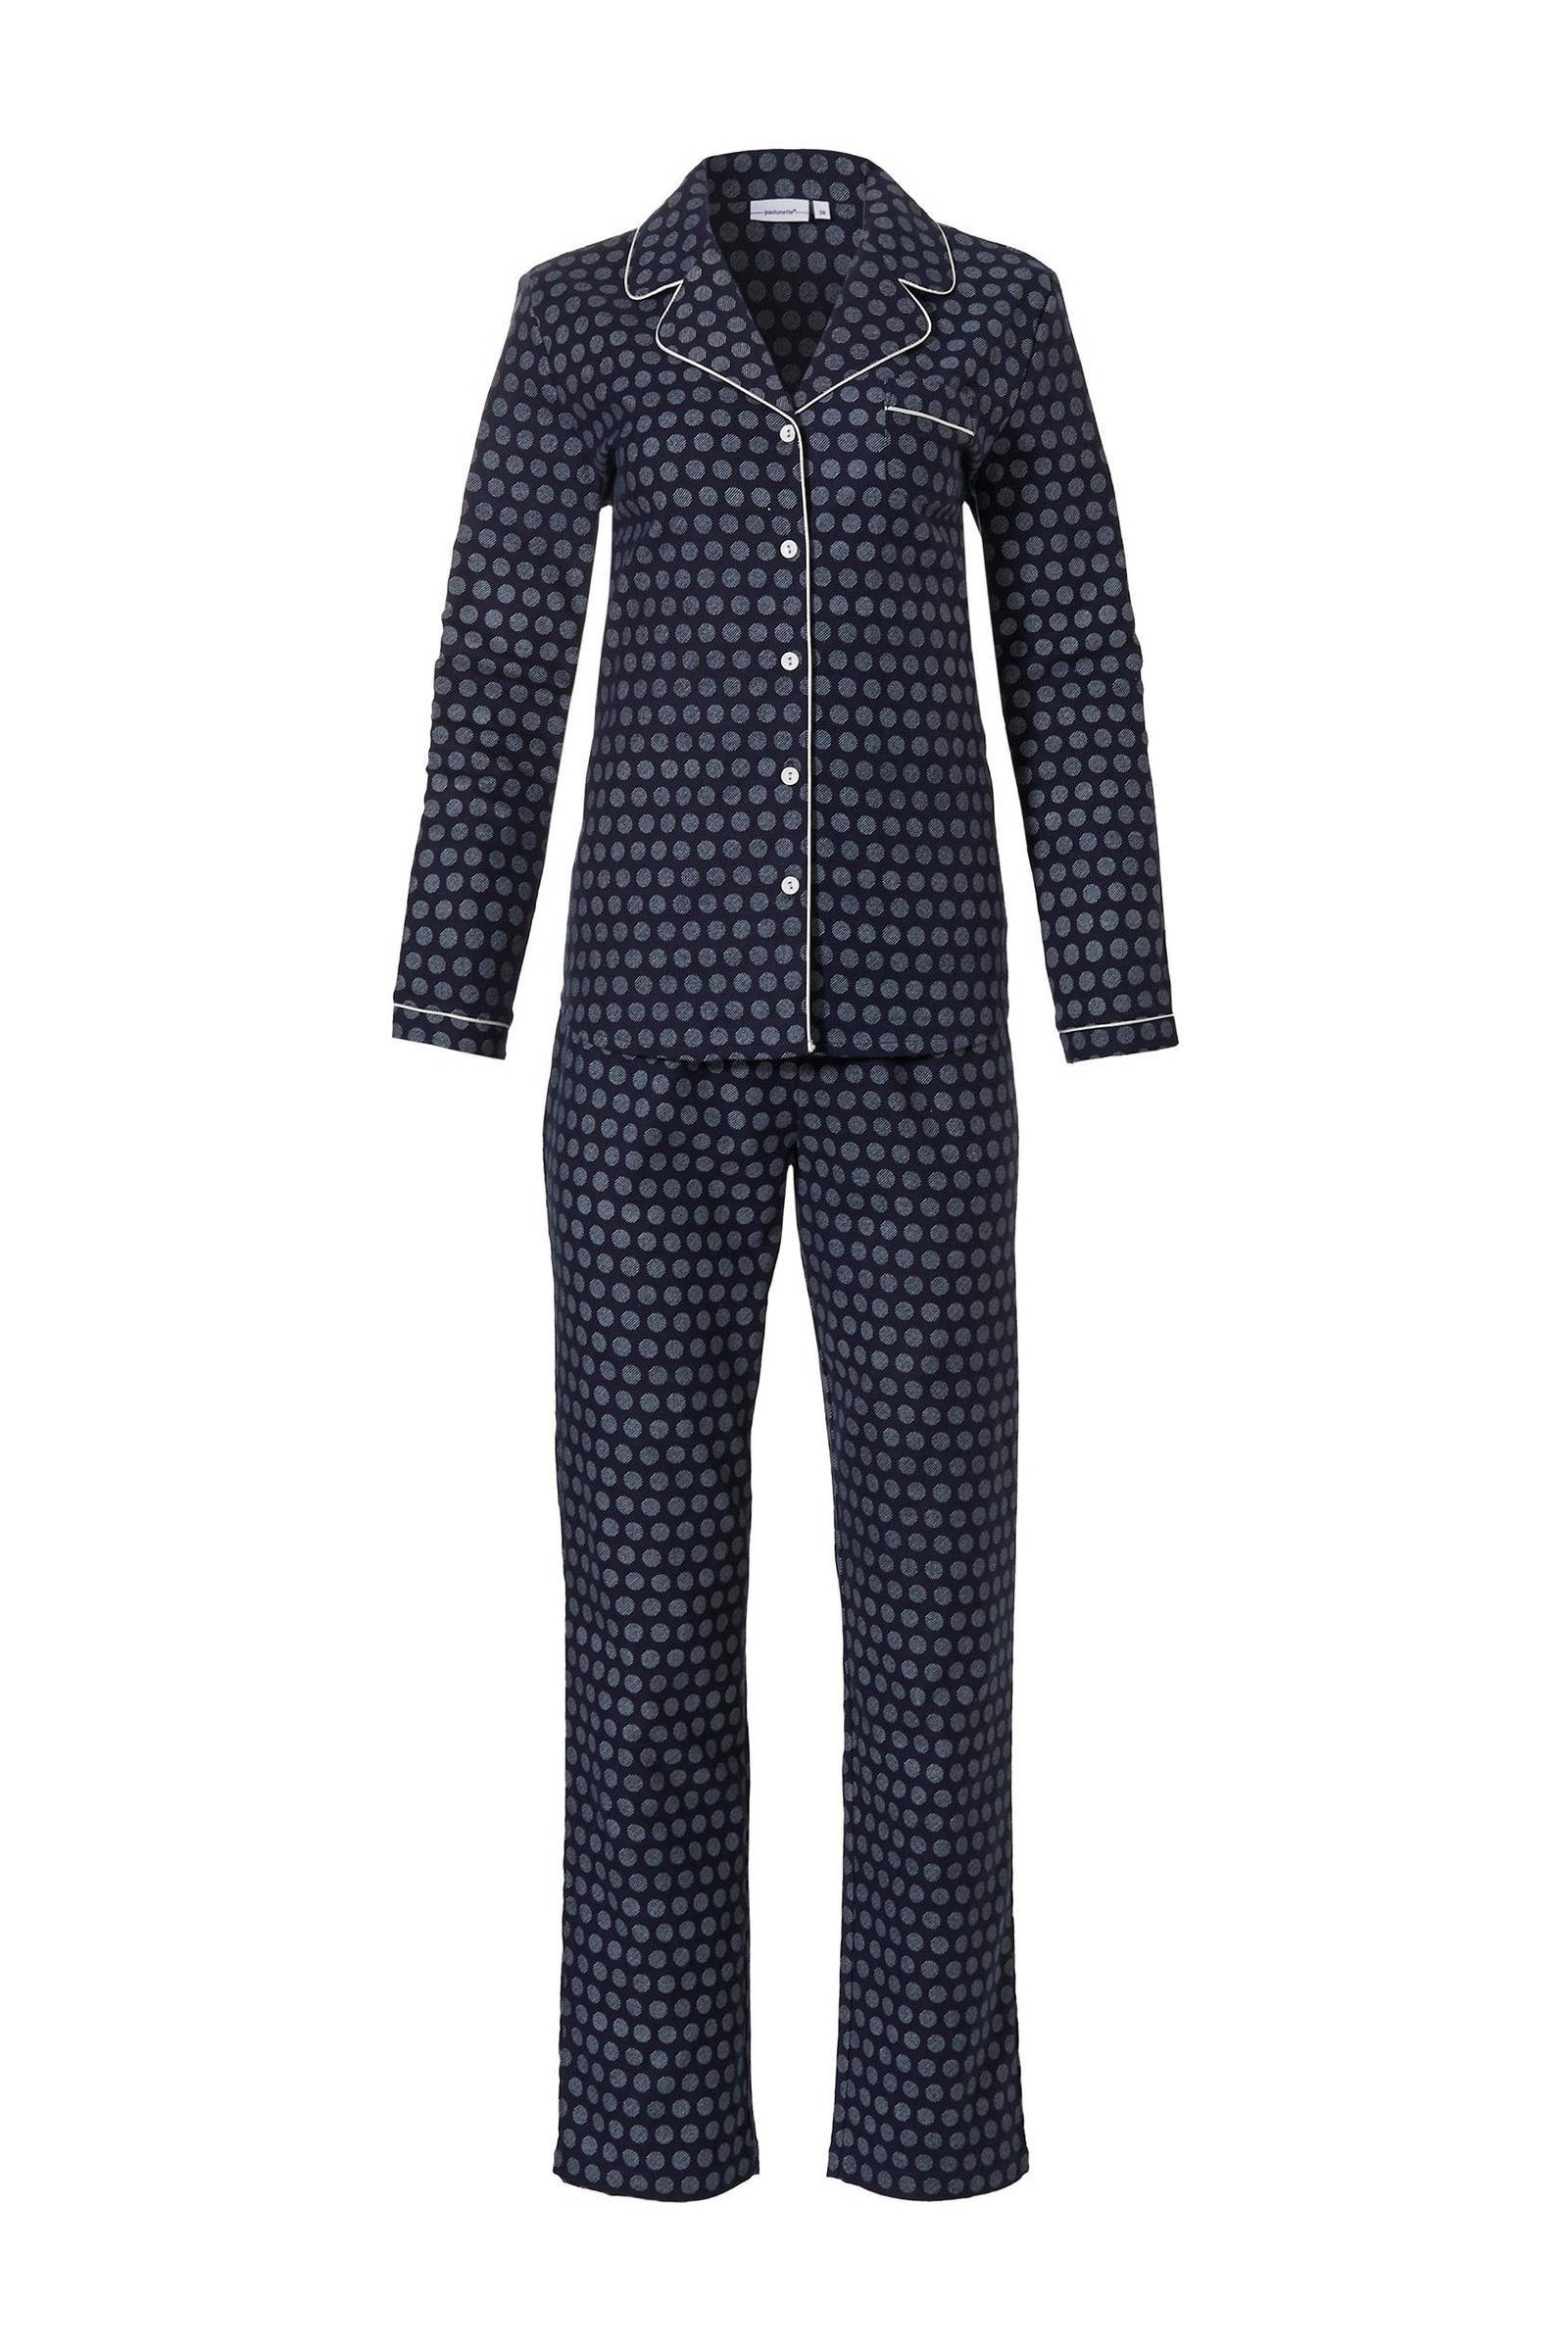 Pastunette Dames pyjama flanel 20212 152 6 Blauw 46 online kopen